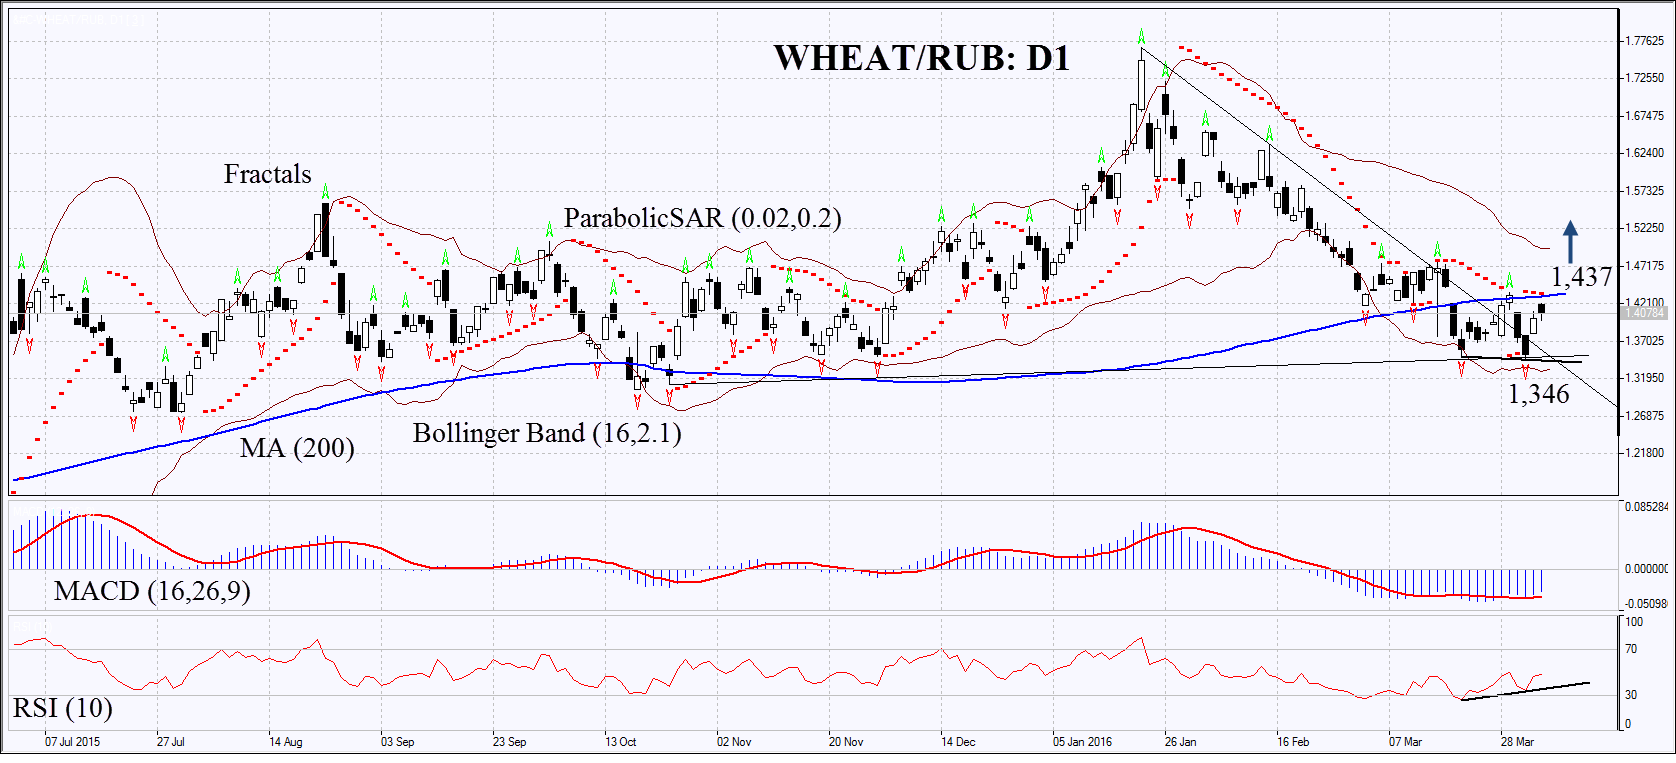 Wheat/RUB :D1